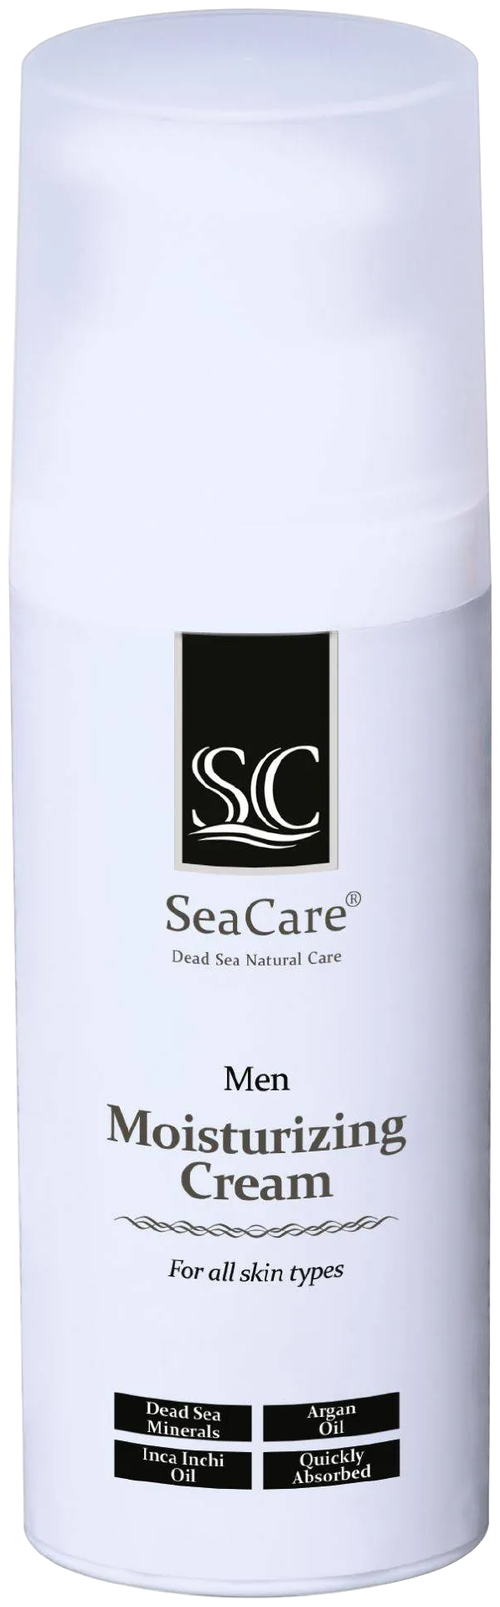 SeaCare мужской увлажняющий крем Moisturizing Cream, 50 мл/60 г